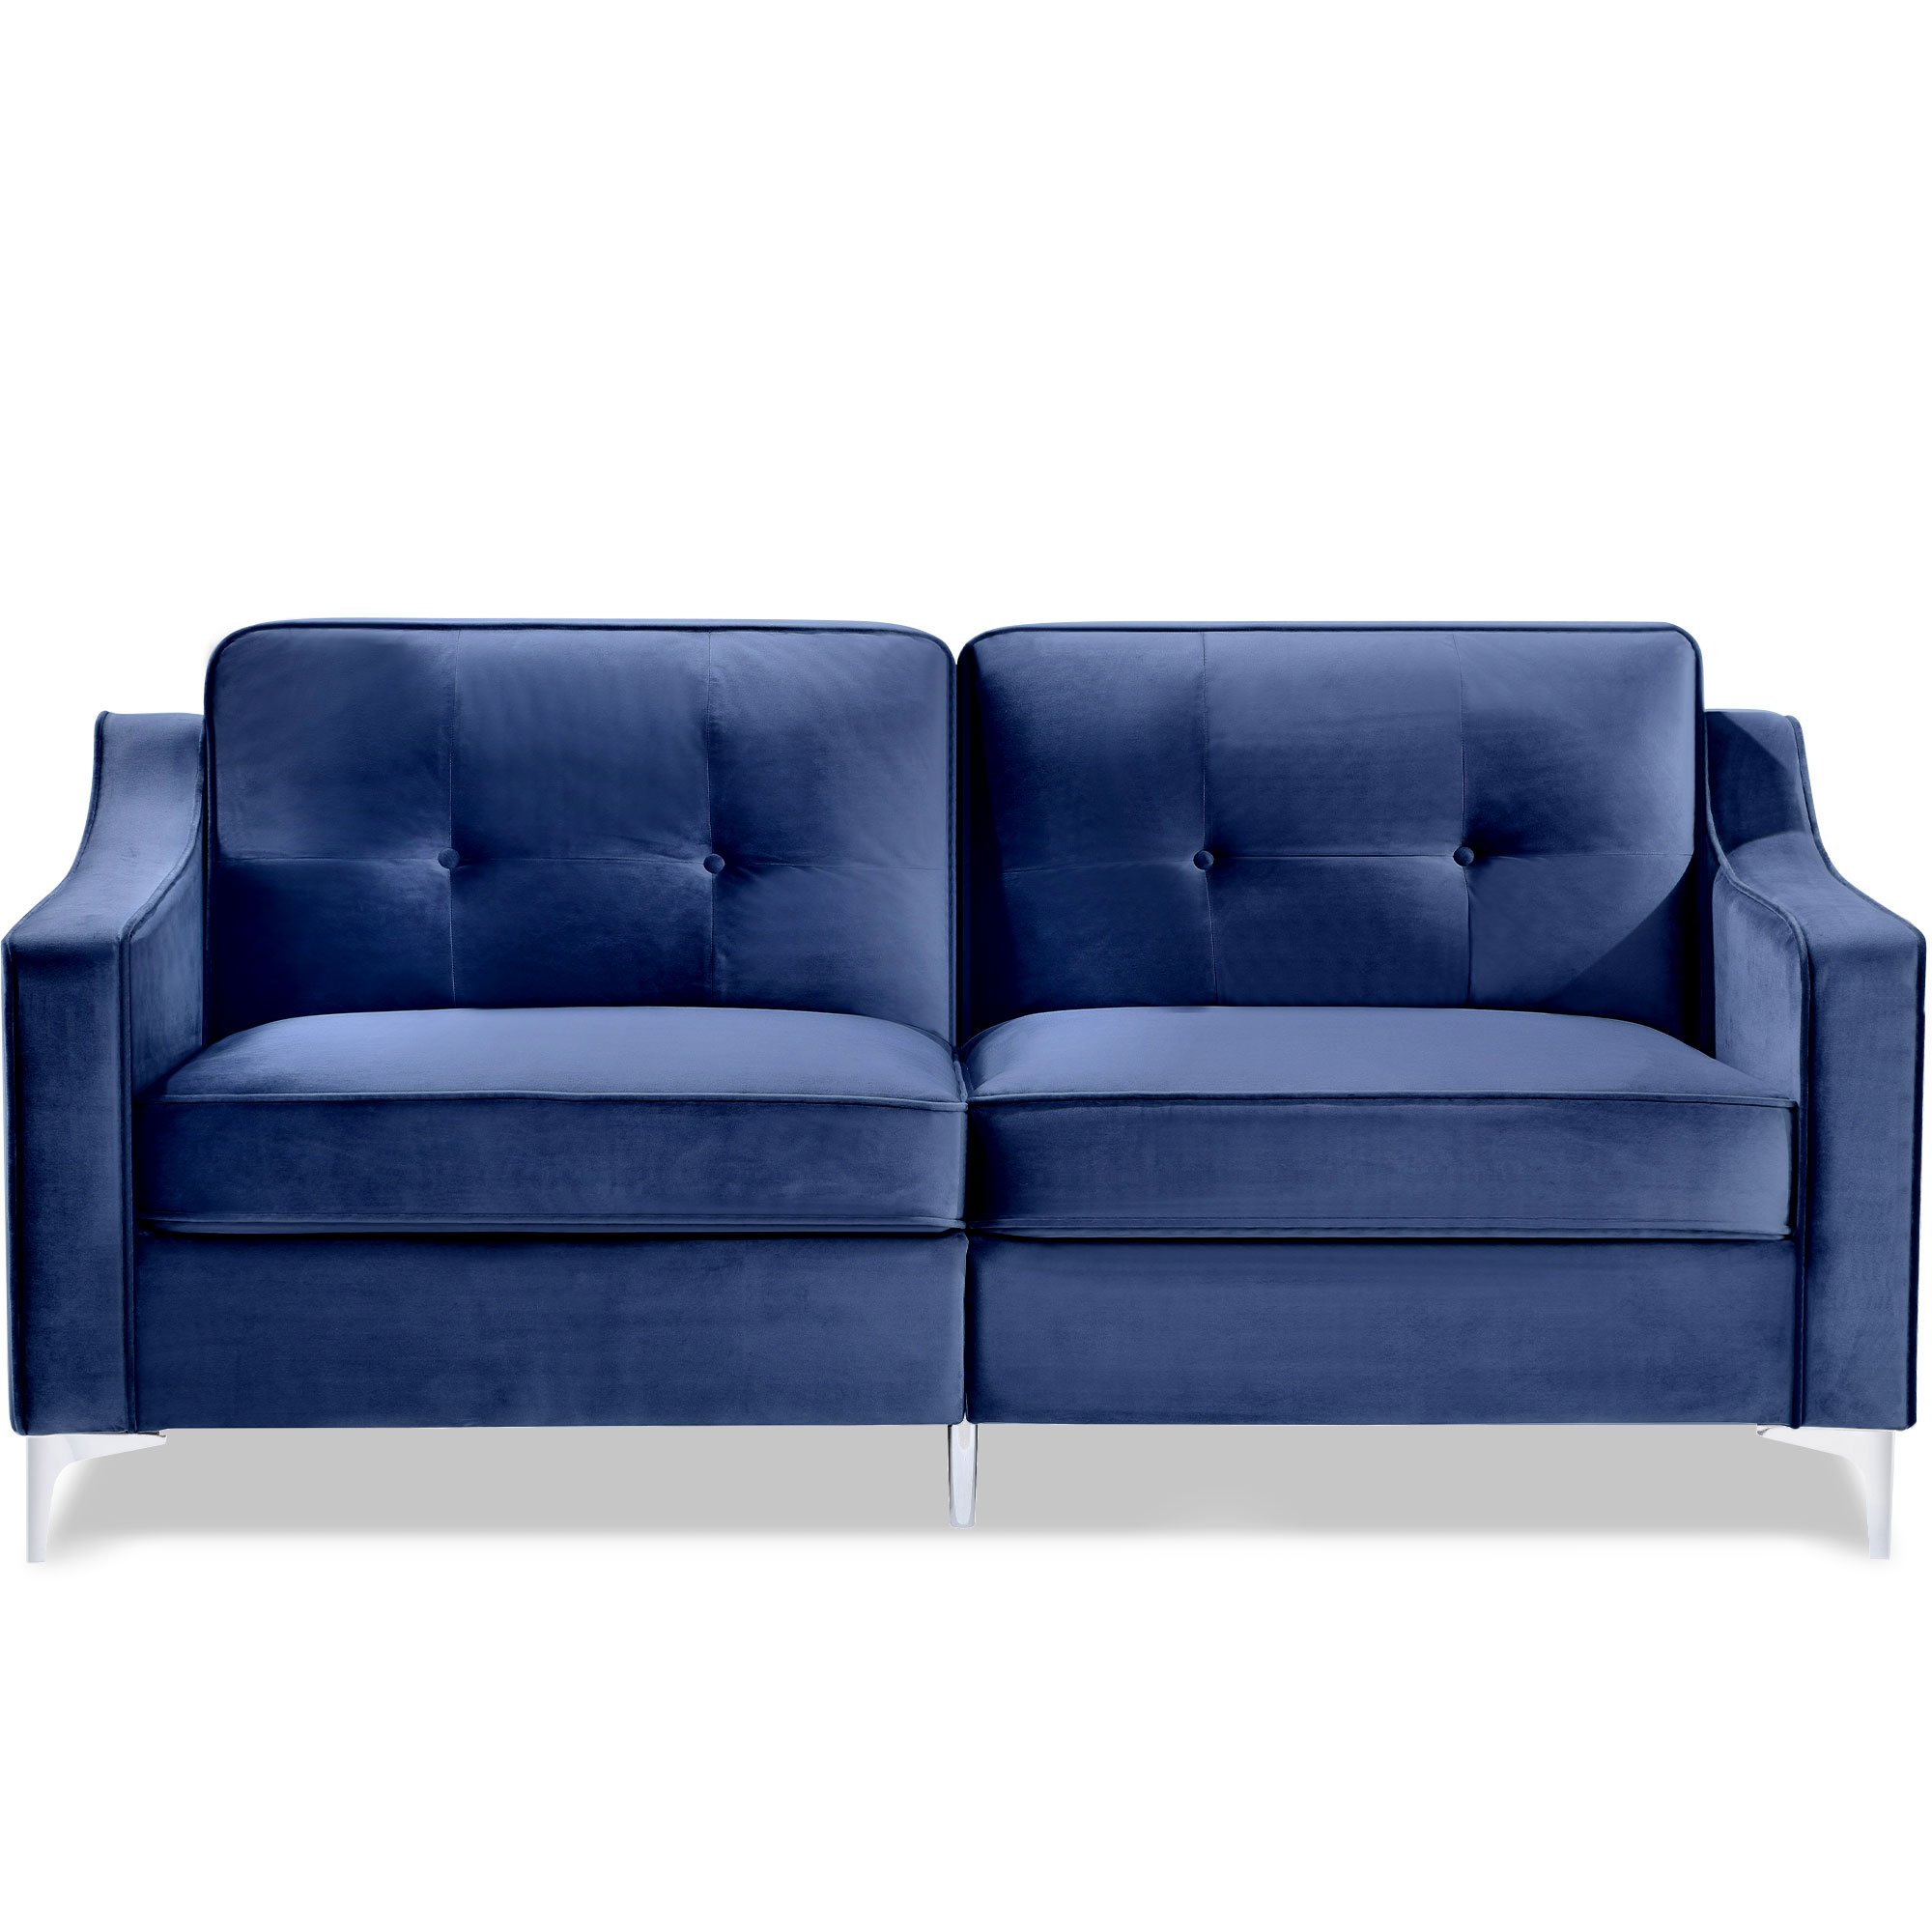 72" Tufted Velvet Upholstered Sofa Couch, Mid-century Modern Sofa Set with Chromed Metal Legs-CASAINC